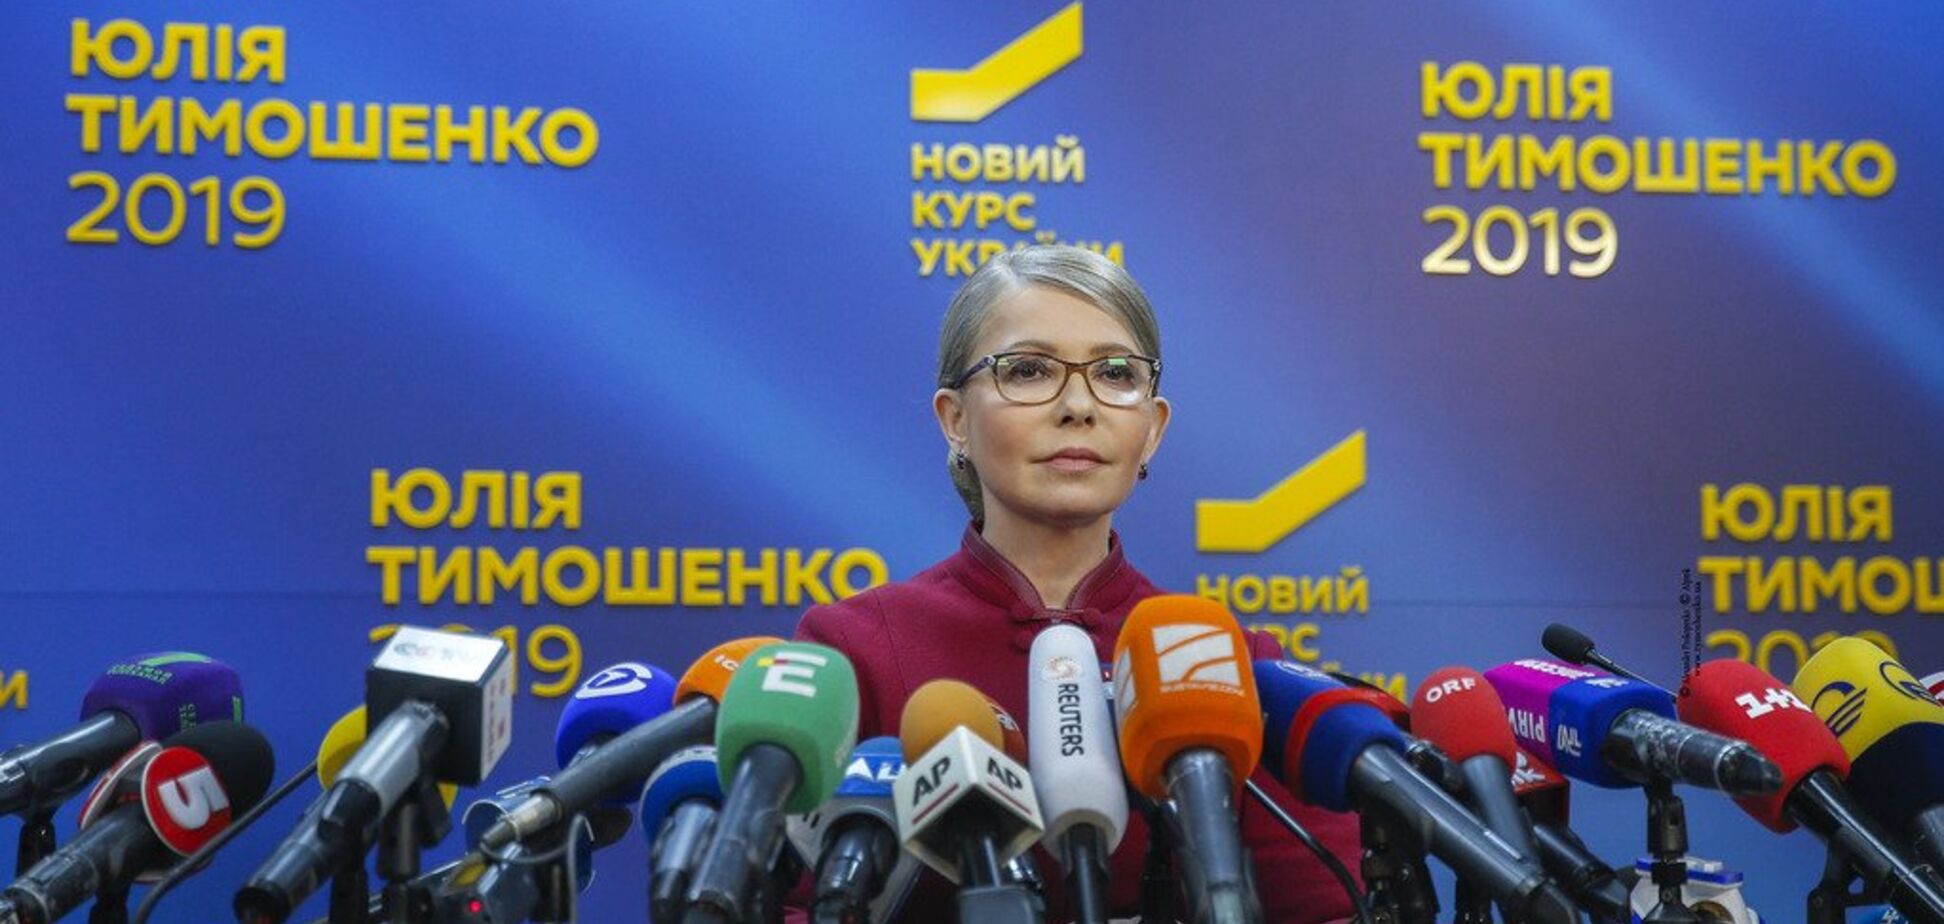 Тимошенко: наша борьба за демократическую Украину не завершена